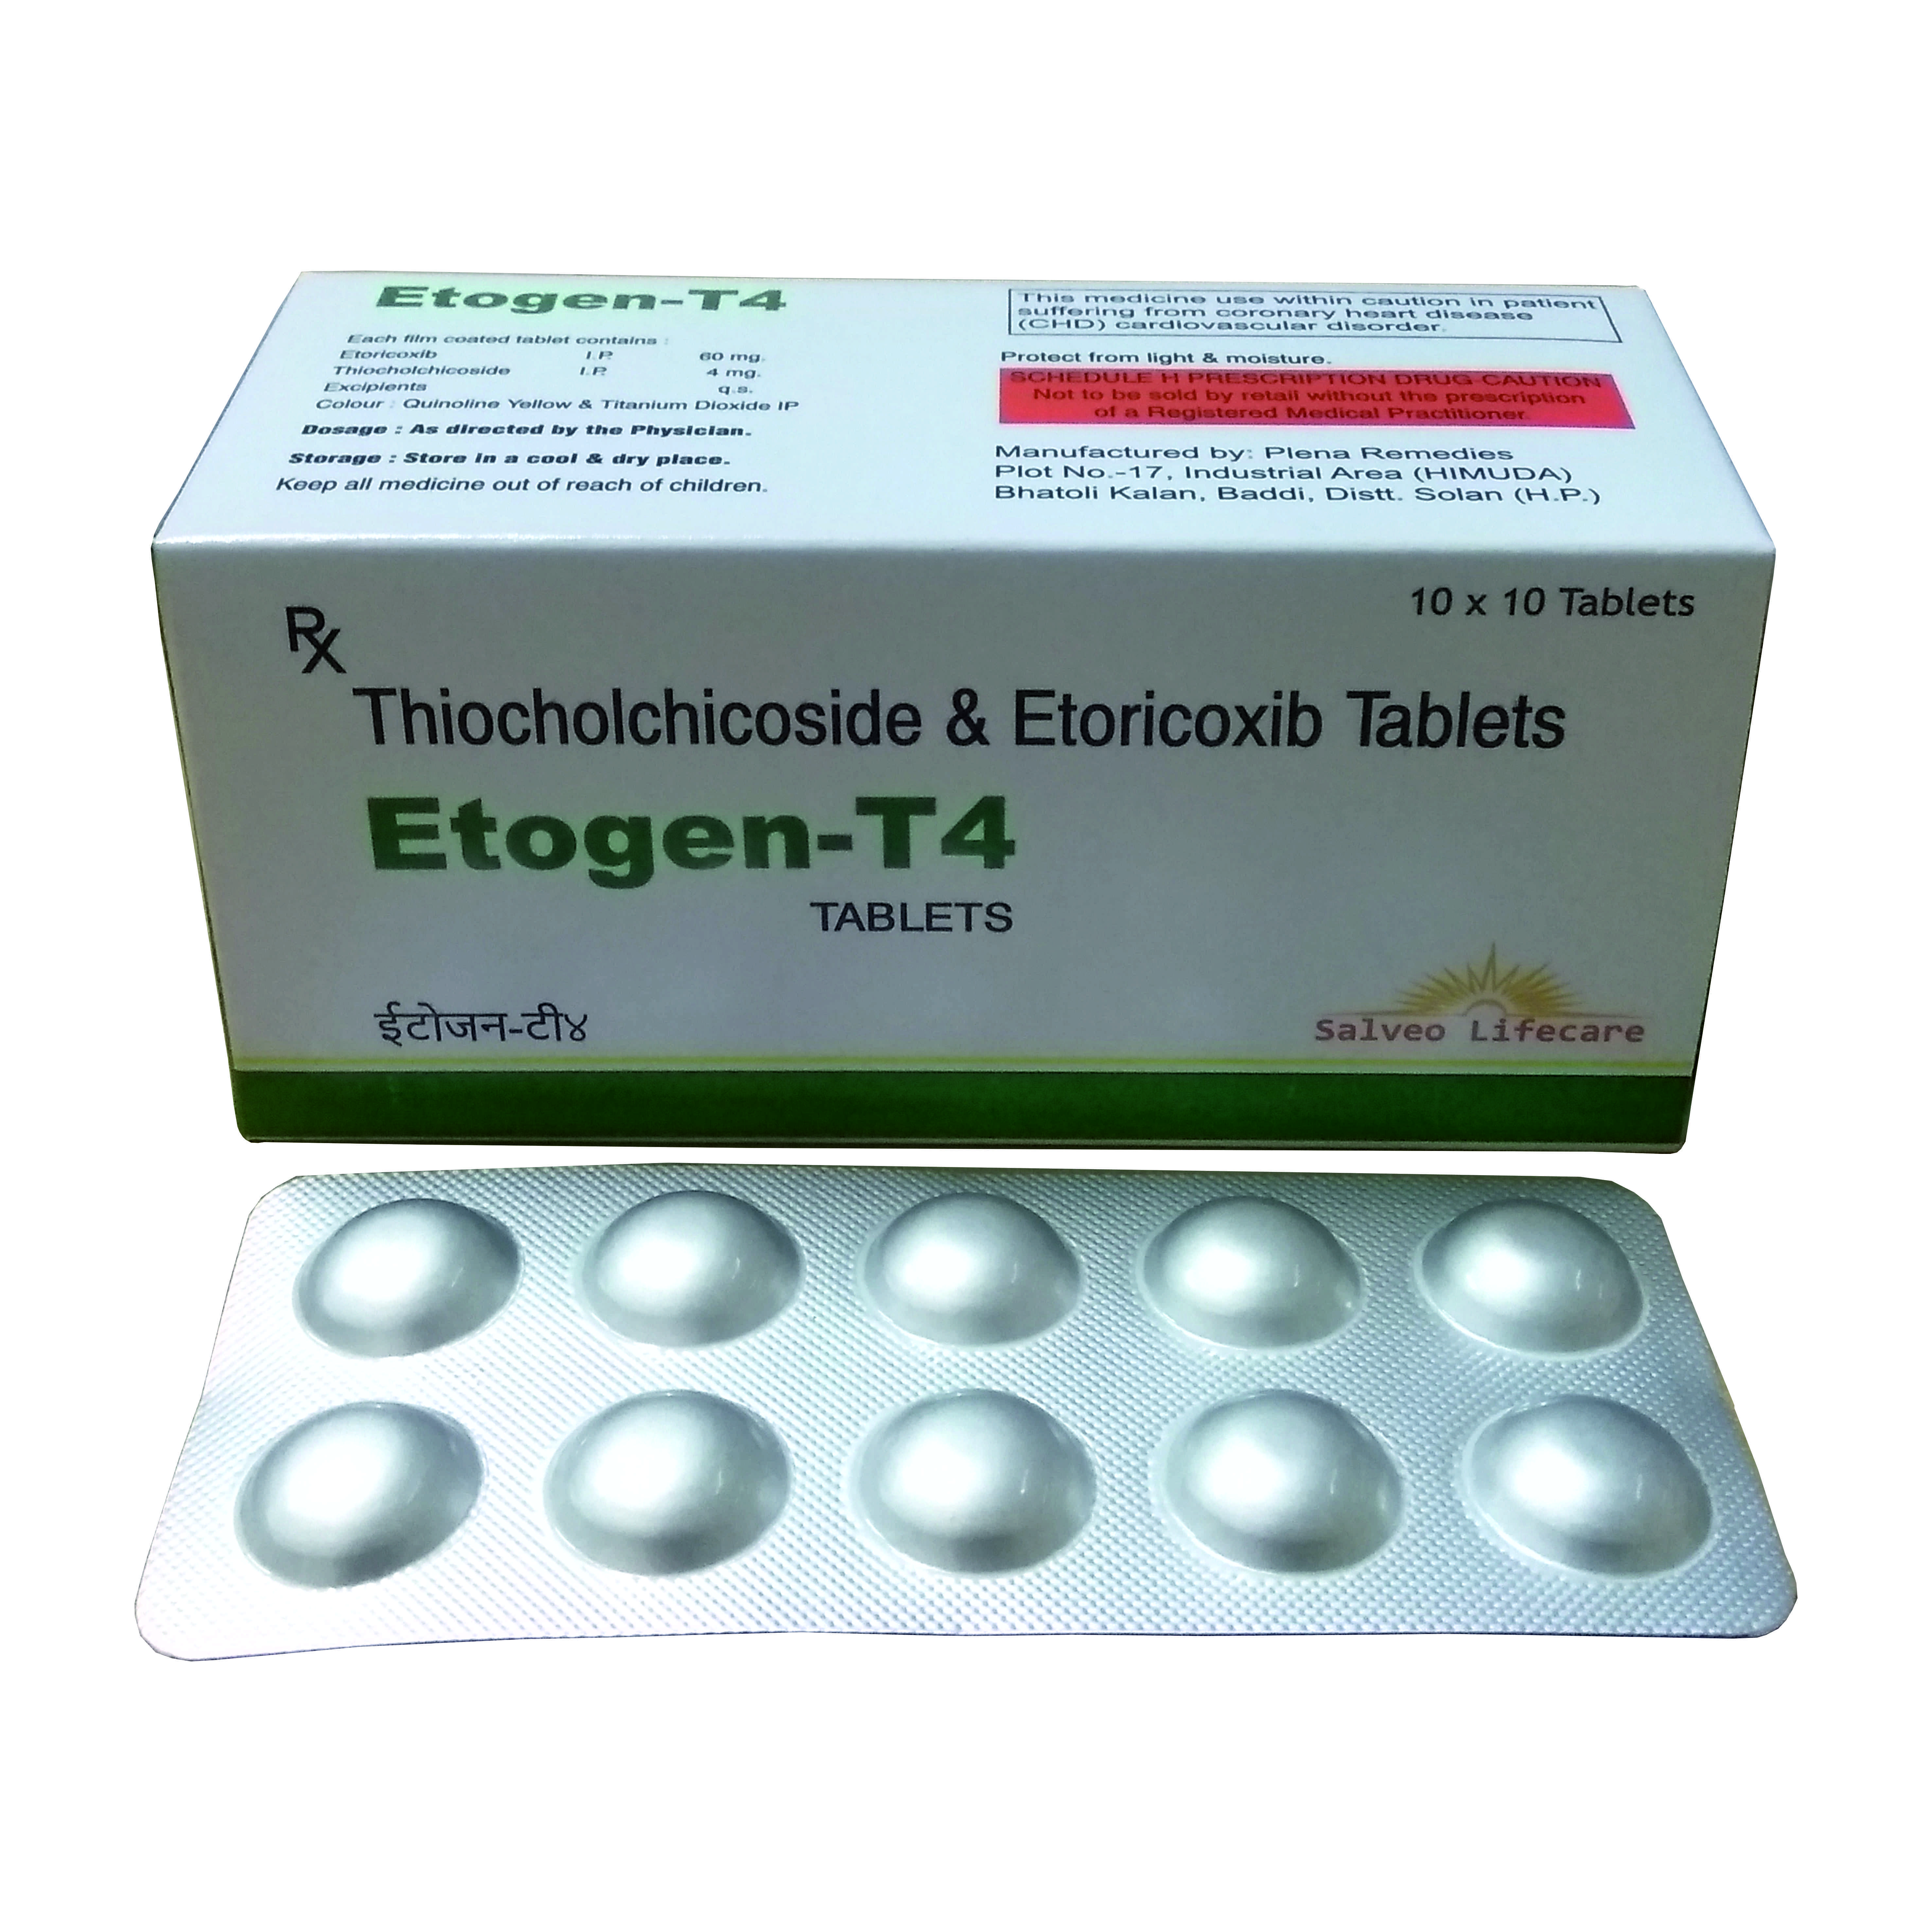 etoricoxib-60 mg, thiocholchicoside 4 mg